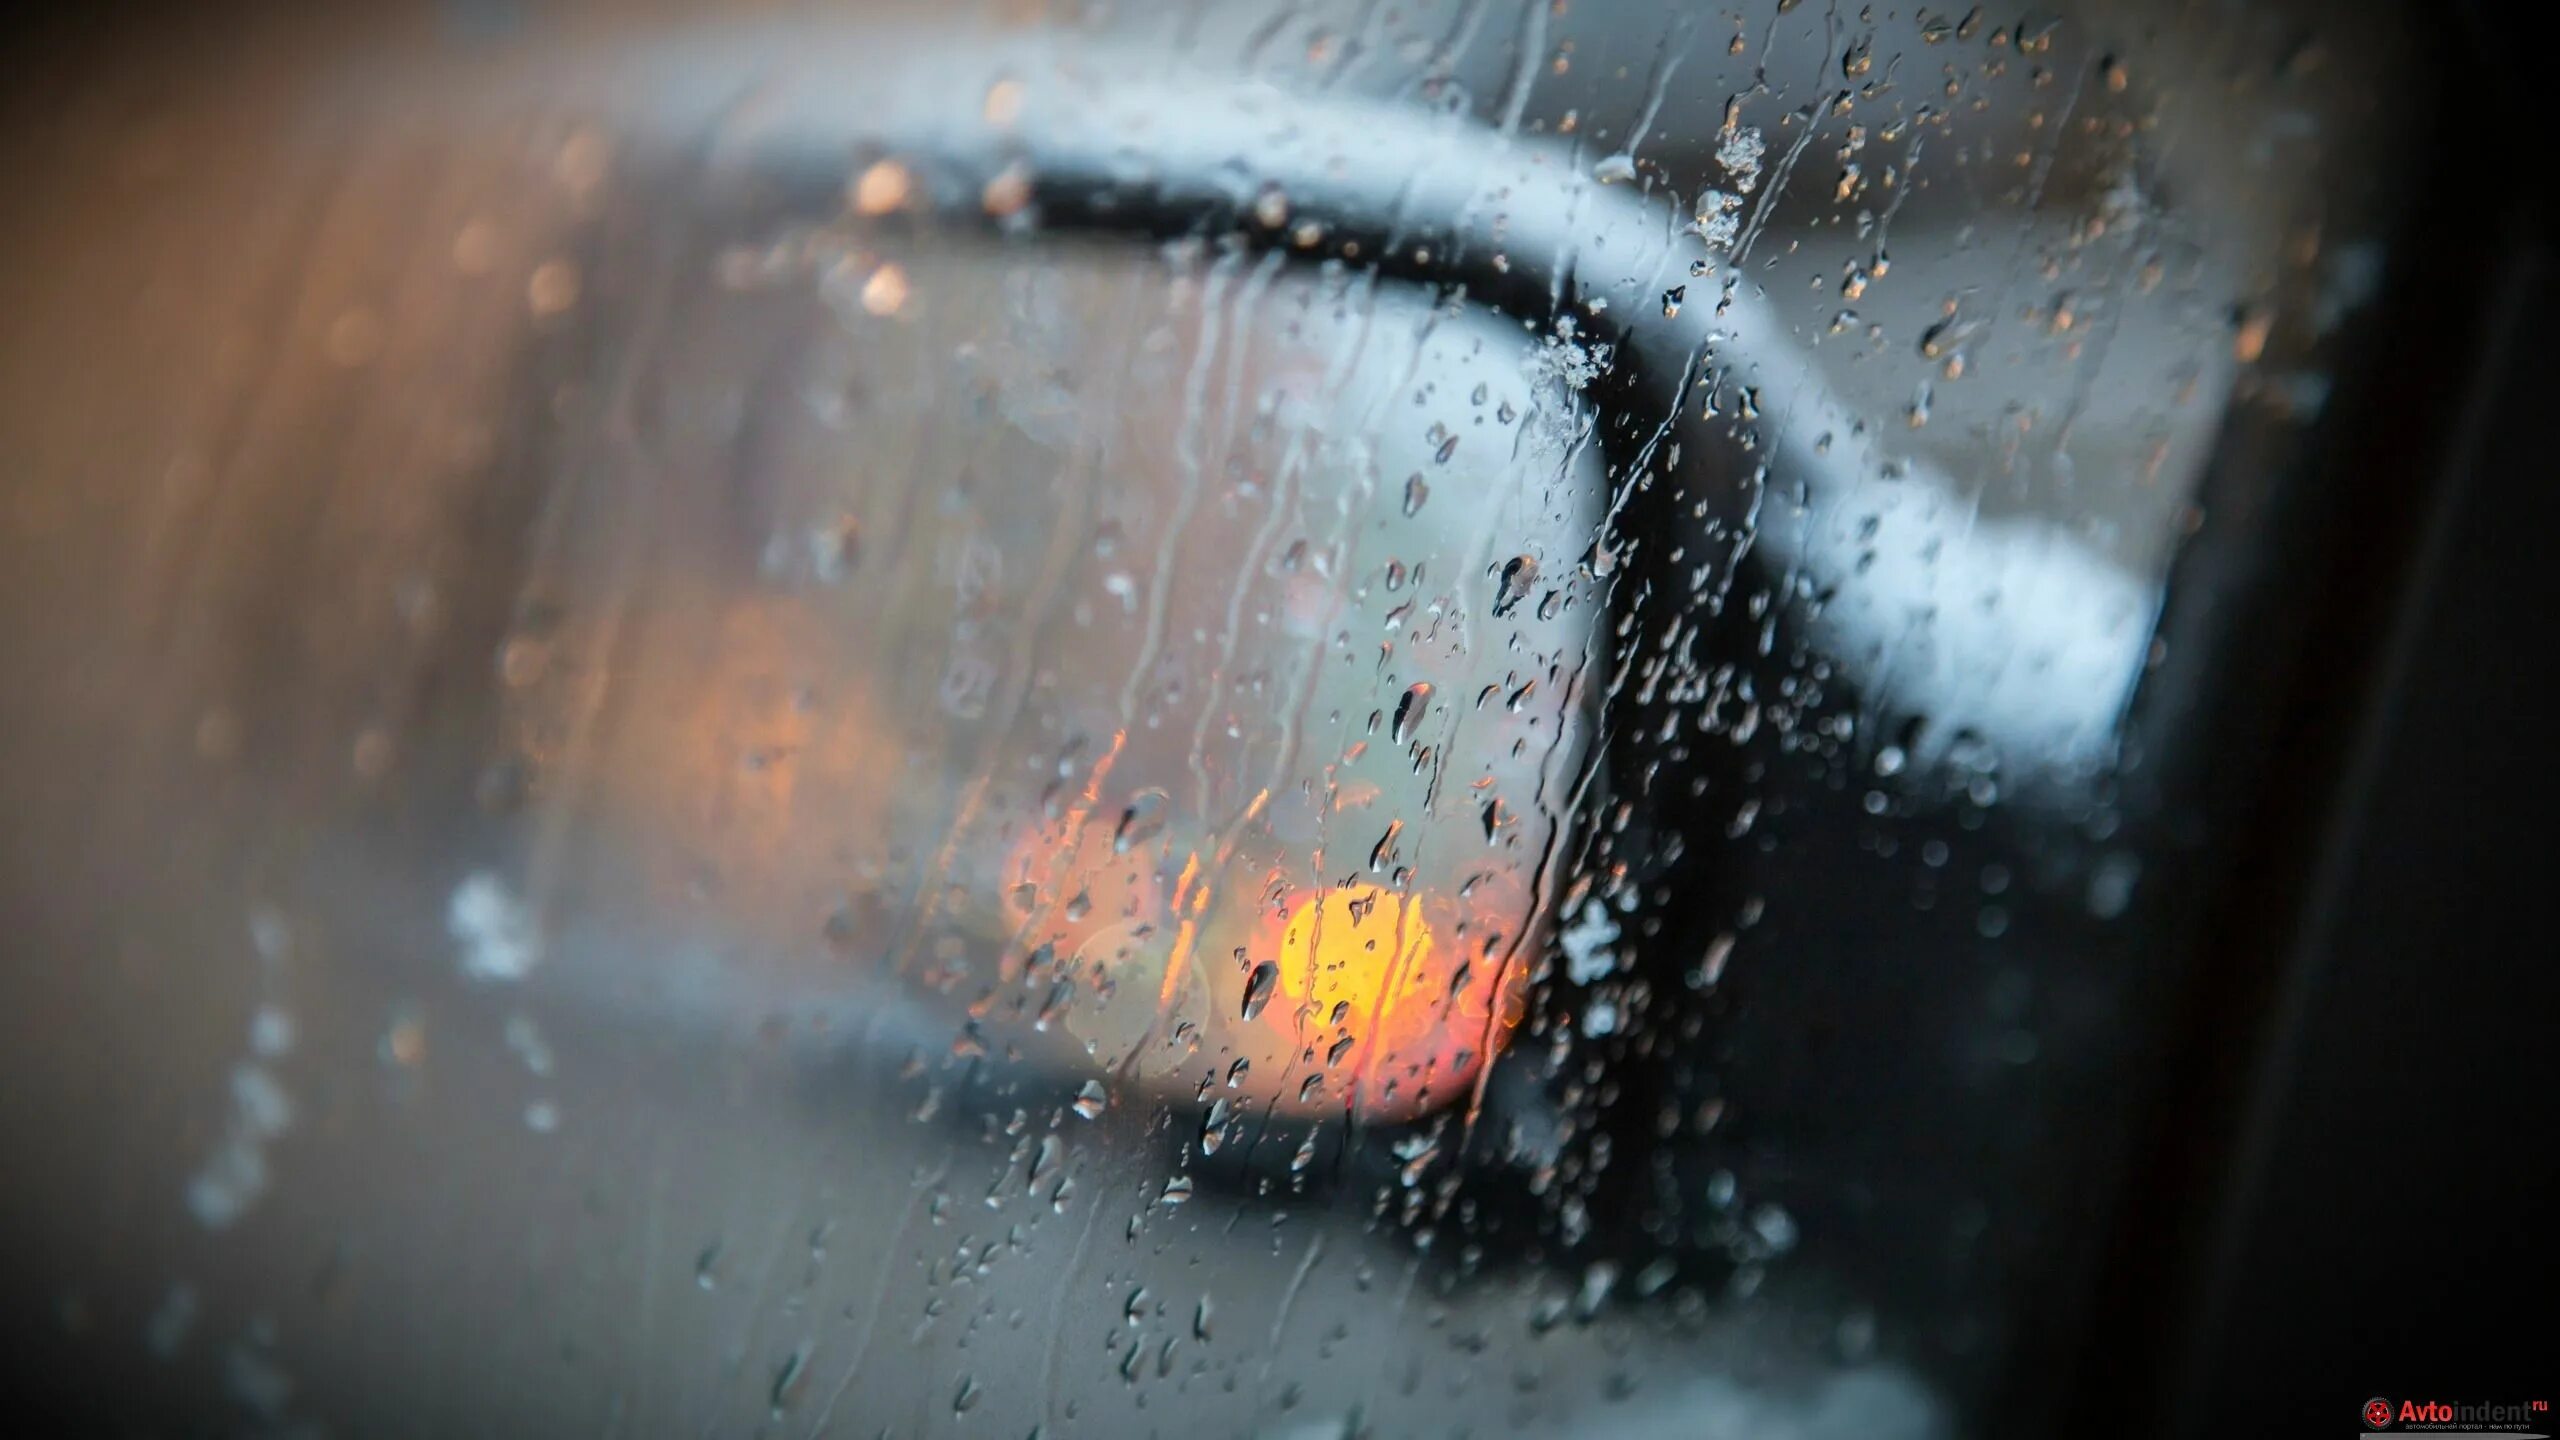 Машина запотевает в дождь. Запотевшие стекла автомобиля. Запотевшее стекло в машине. Дождь на стекле машины. Мокрое стекло машины.